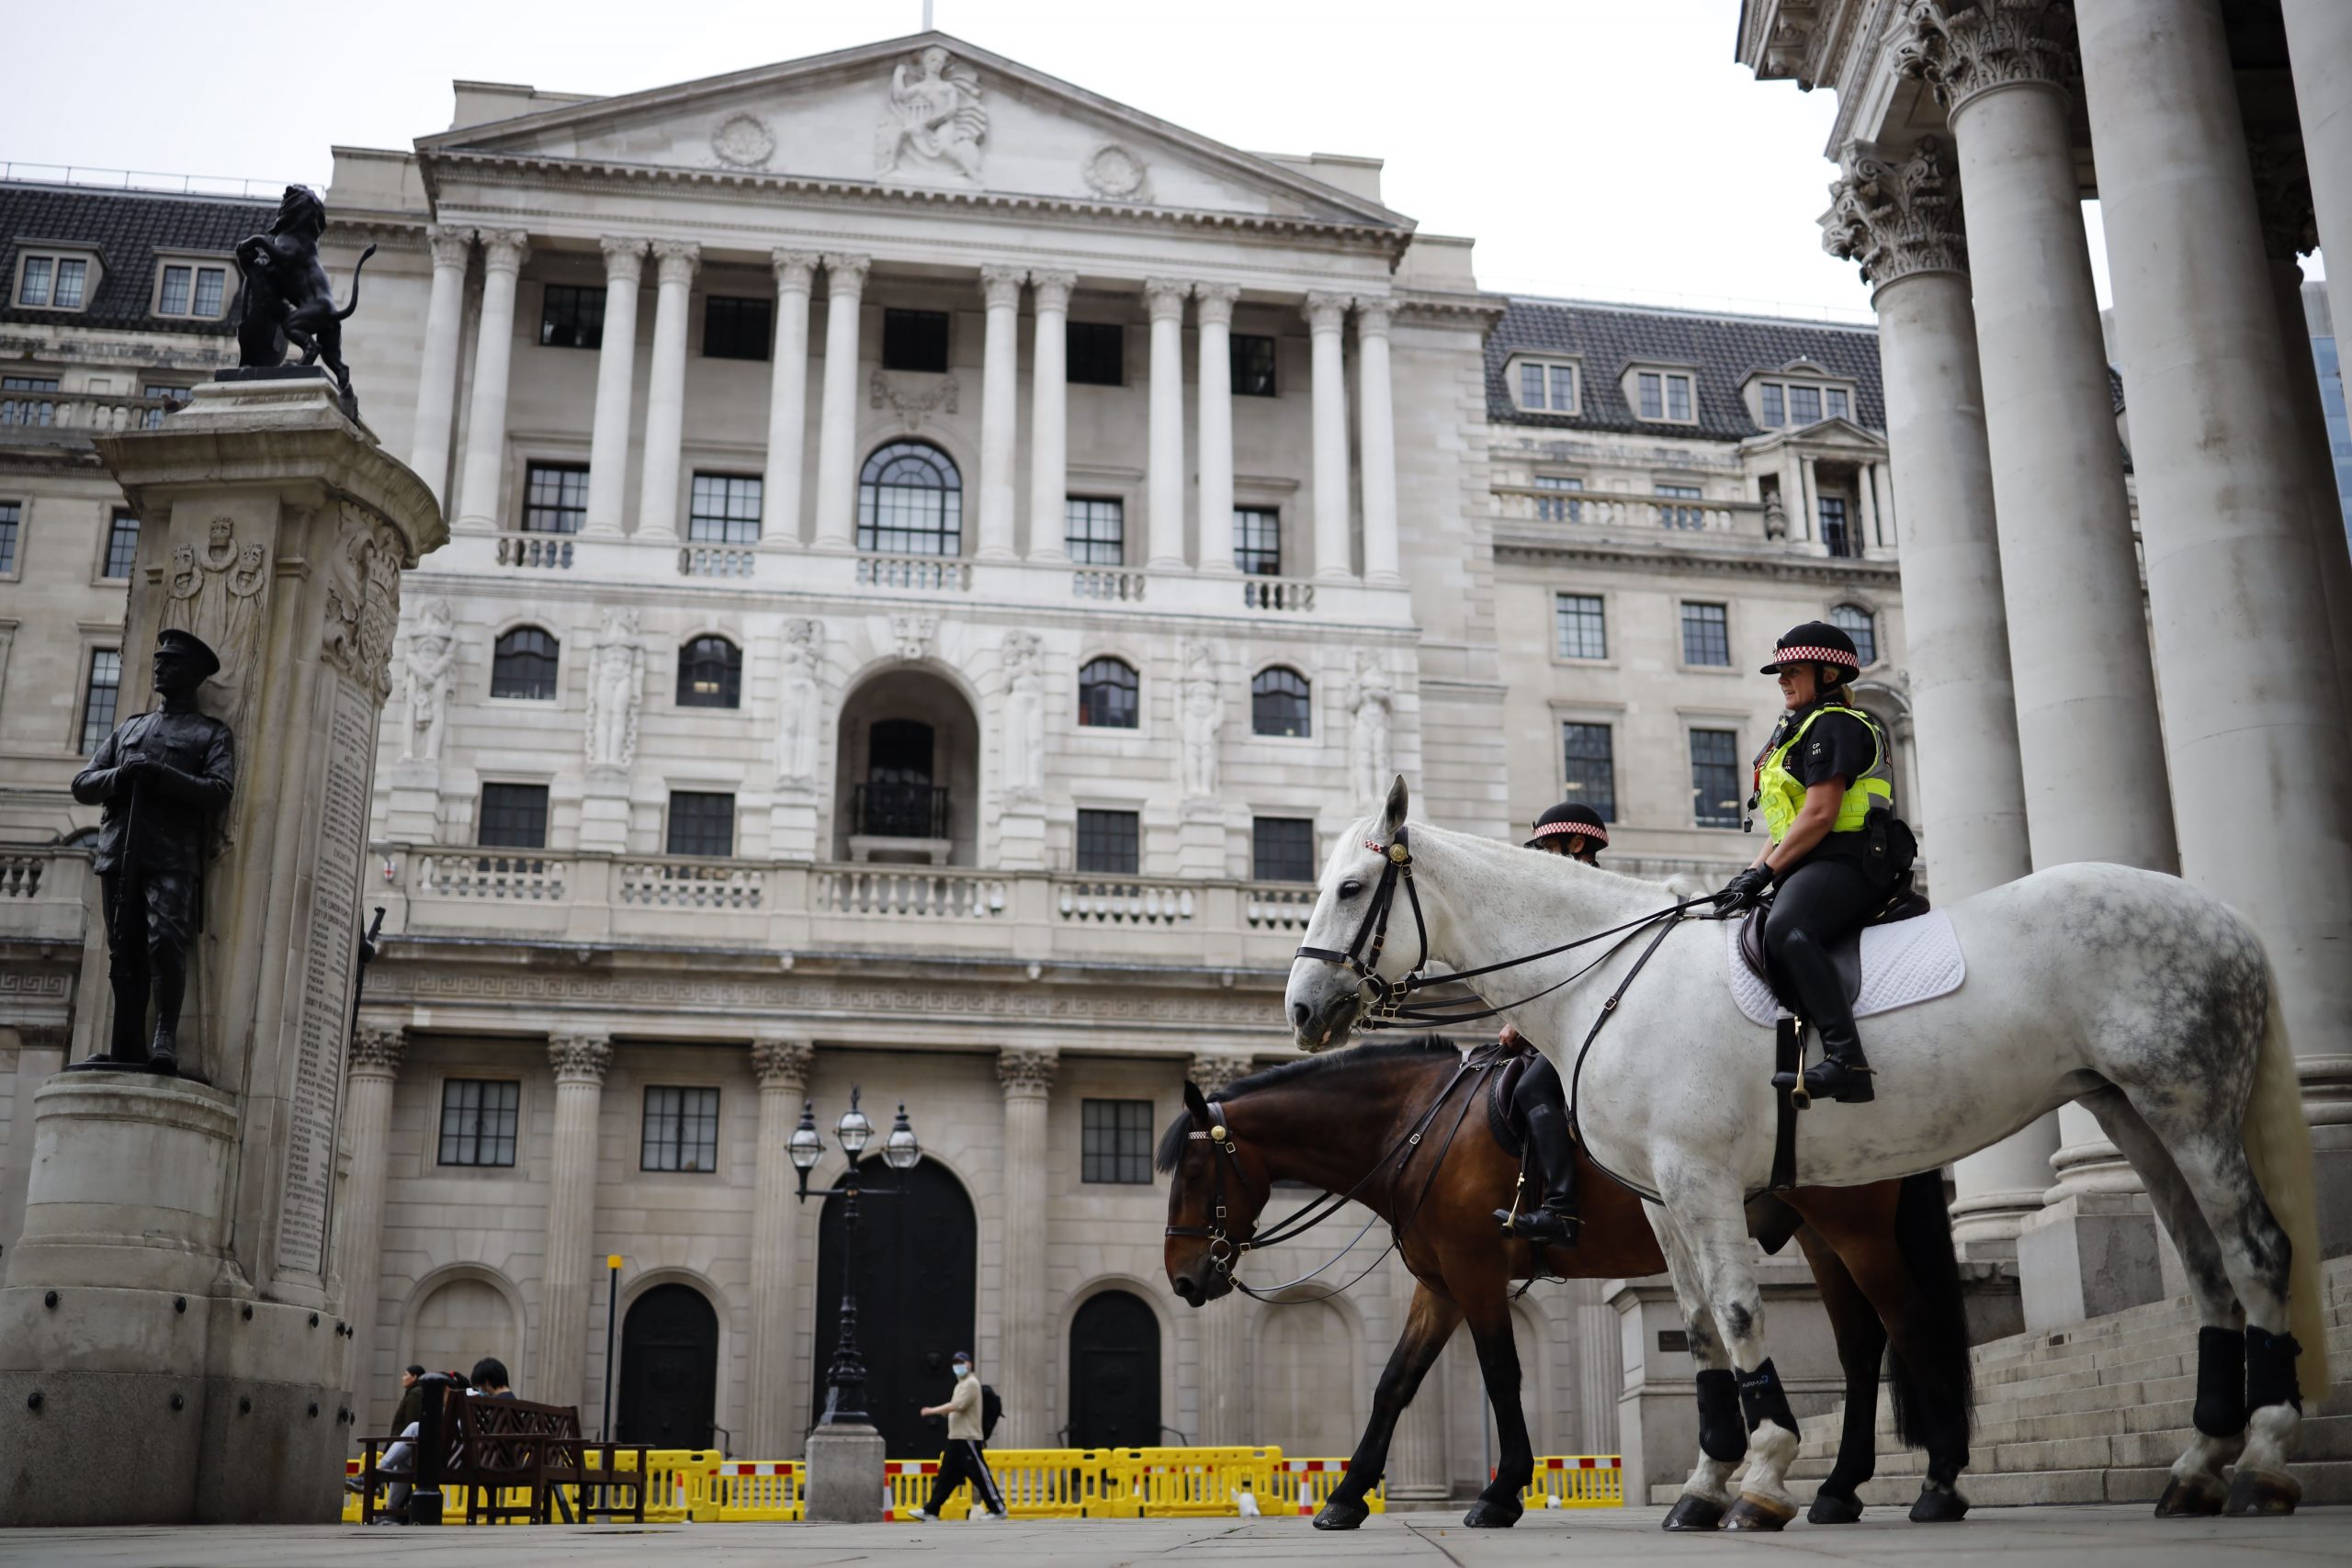 Bank of England maintains rates as new corona virus lockdowns begin

